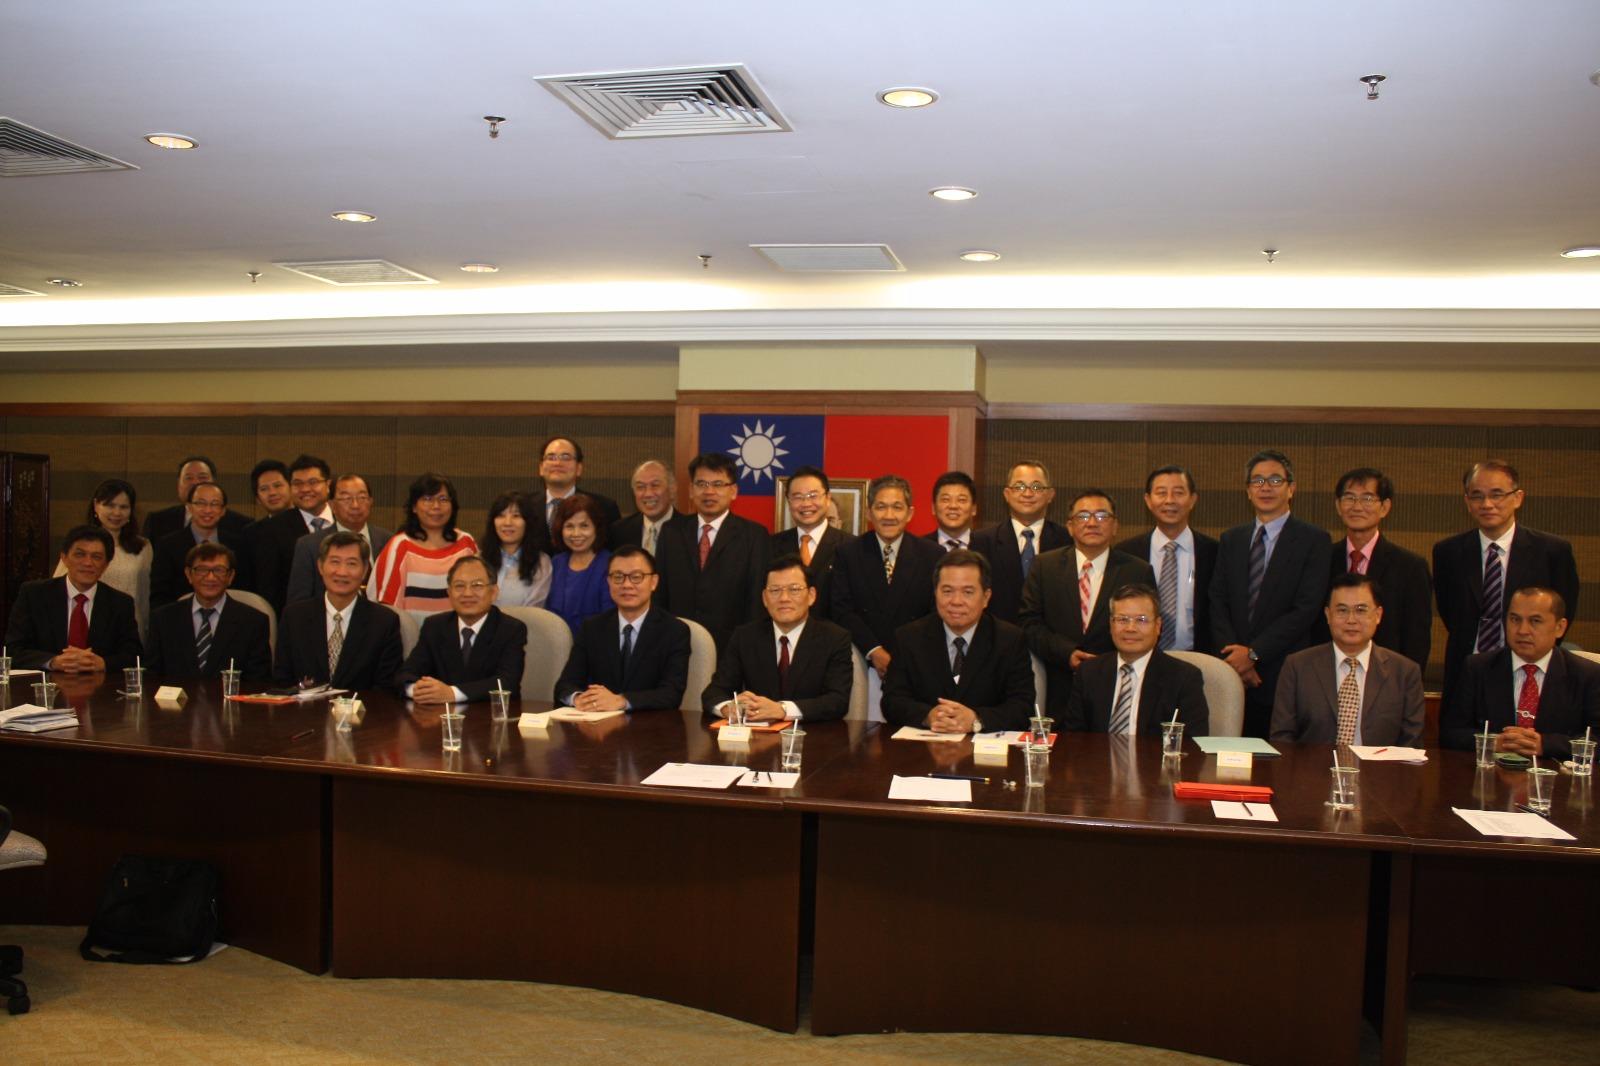 駐馬來西亞代表處章計平大使(前排,右5)與馬來西亞留臺校友會聯合總會第22屆新任理事合影留念。